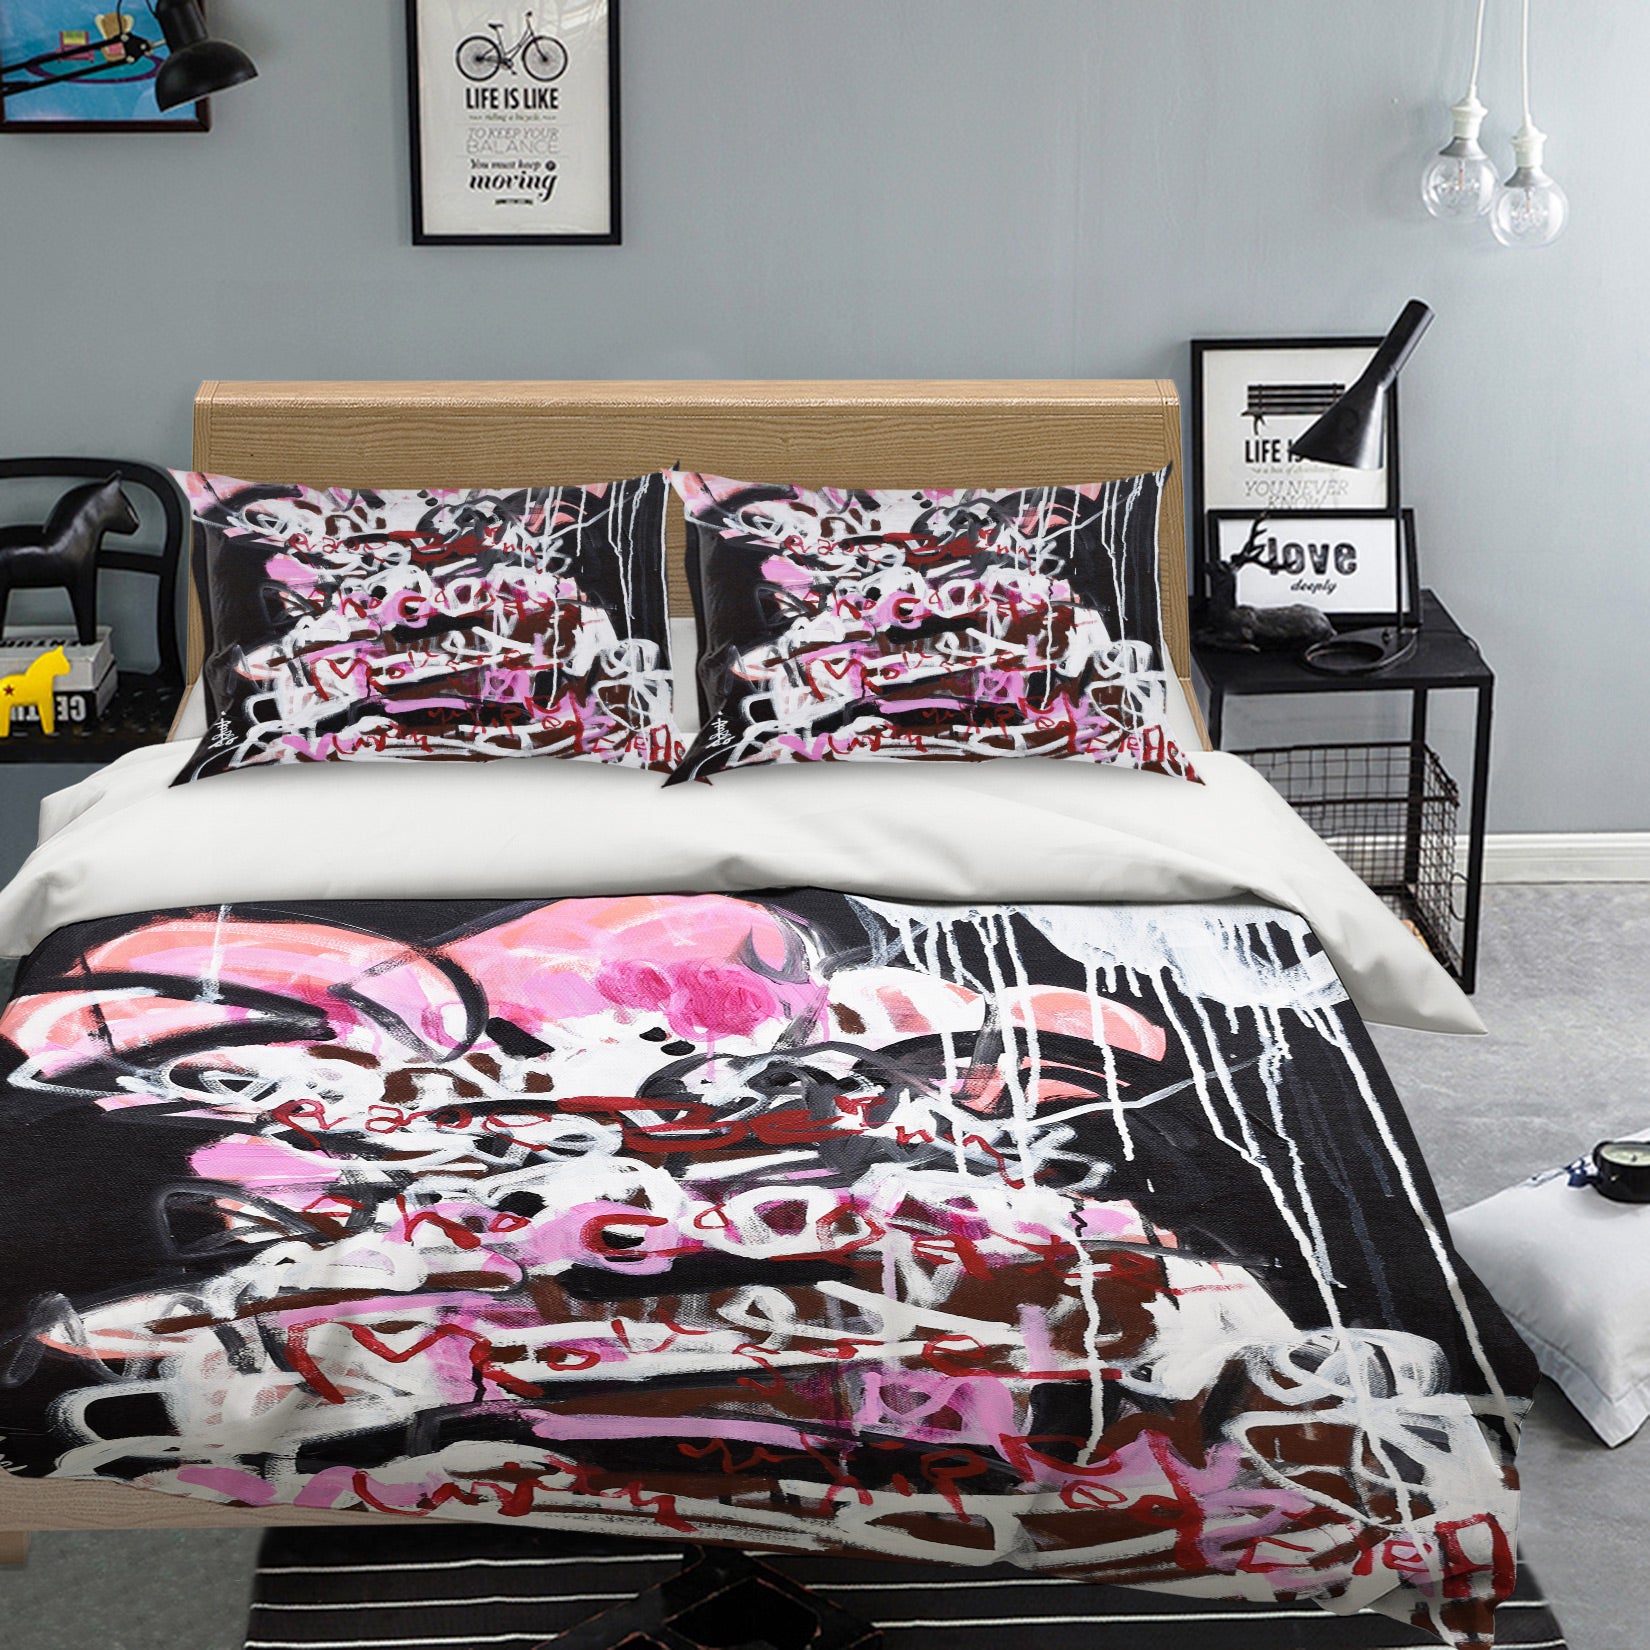 3D Graffiti Art 1185 Misako Chida Bedding Bed Pillowcases Quilt Cover Duvet Cover